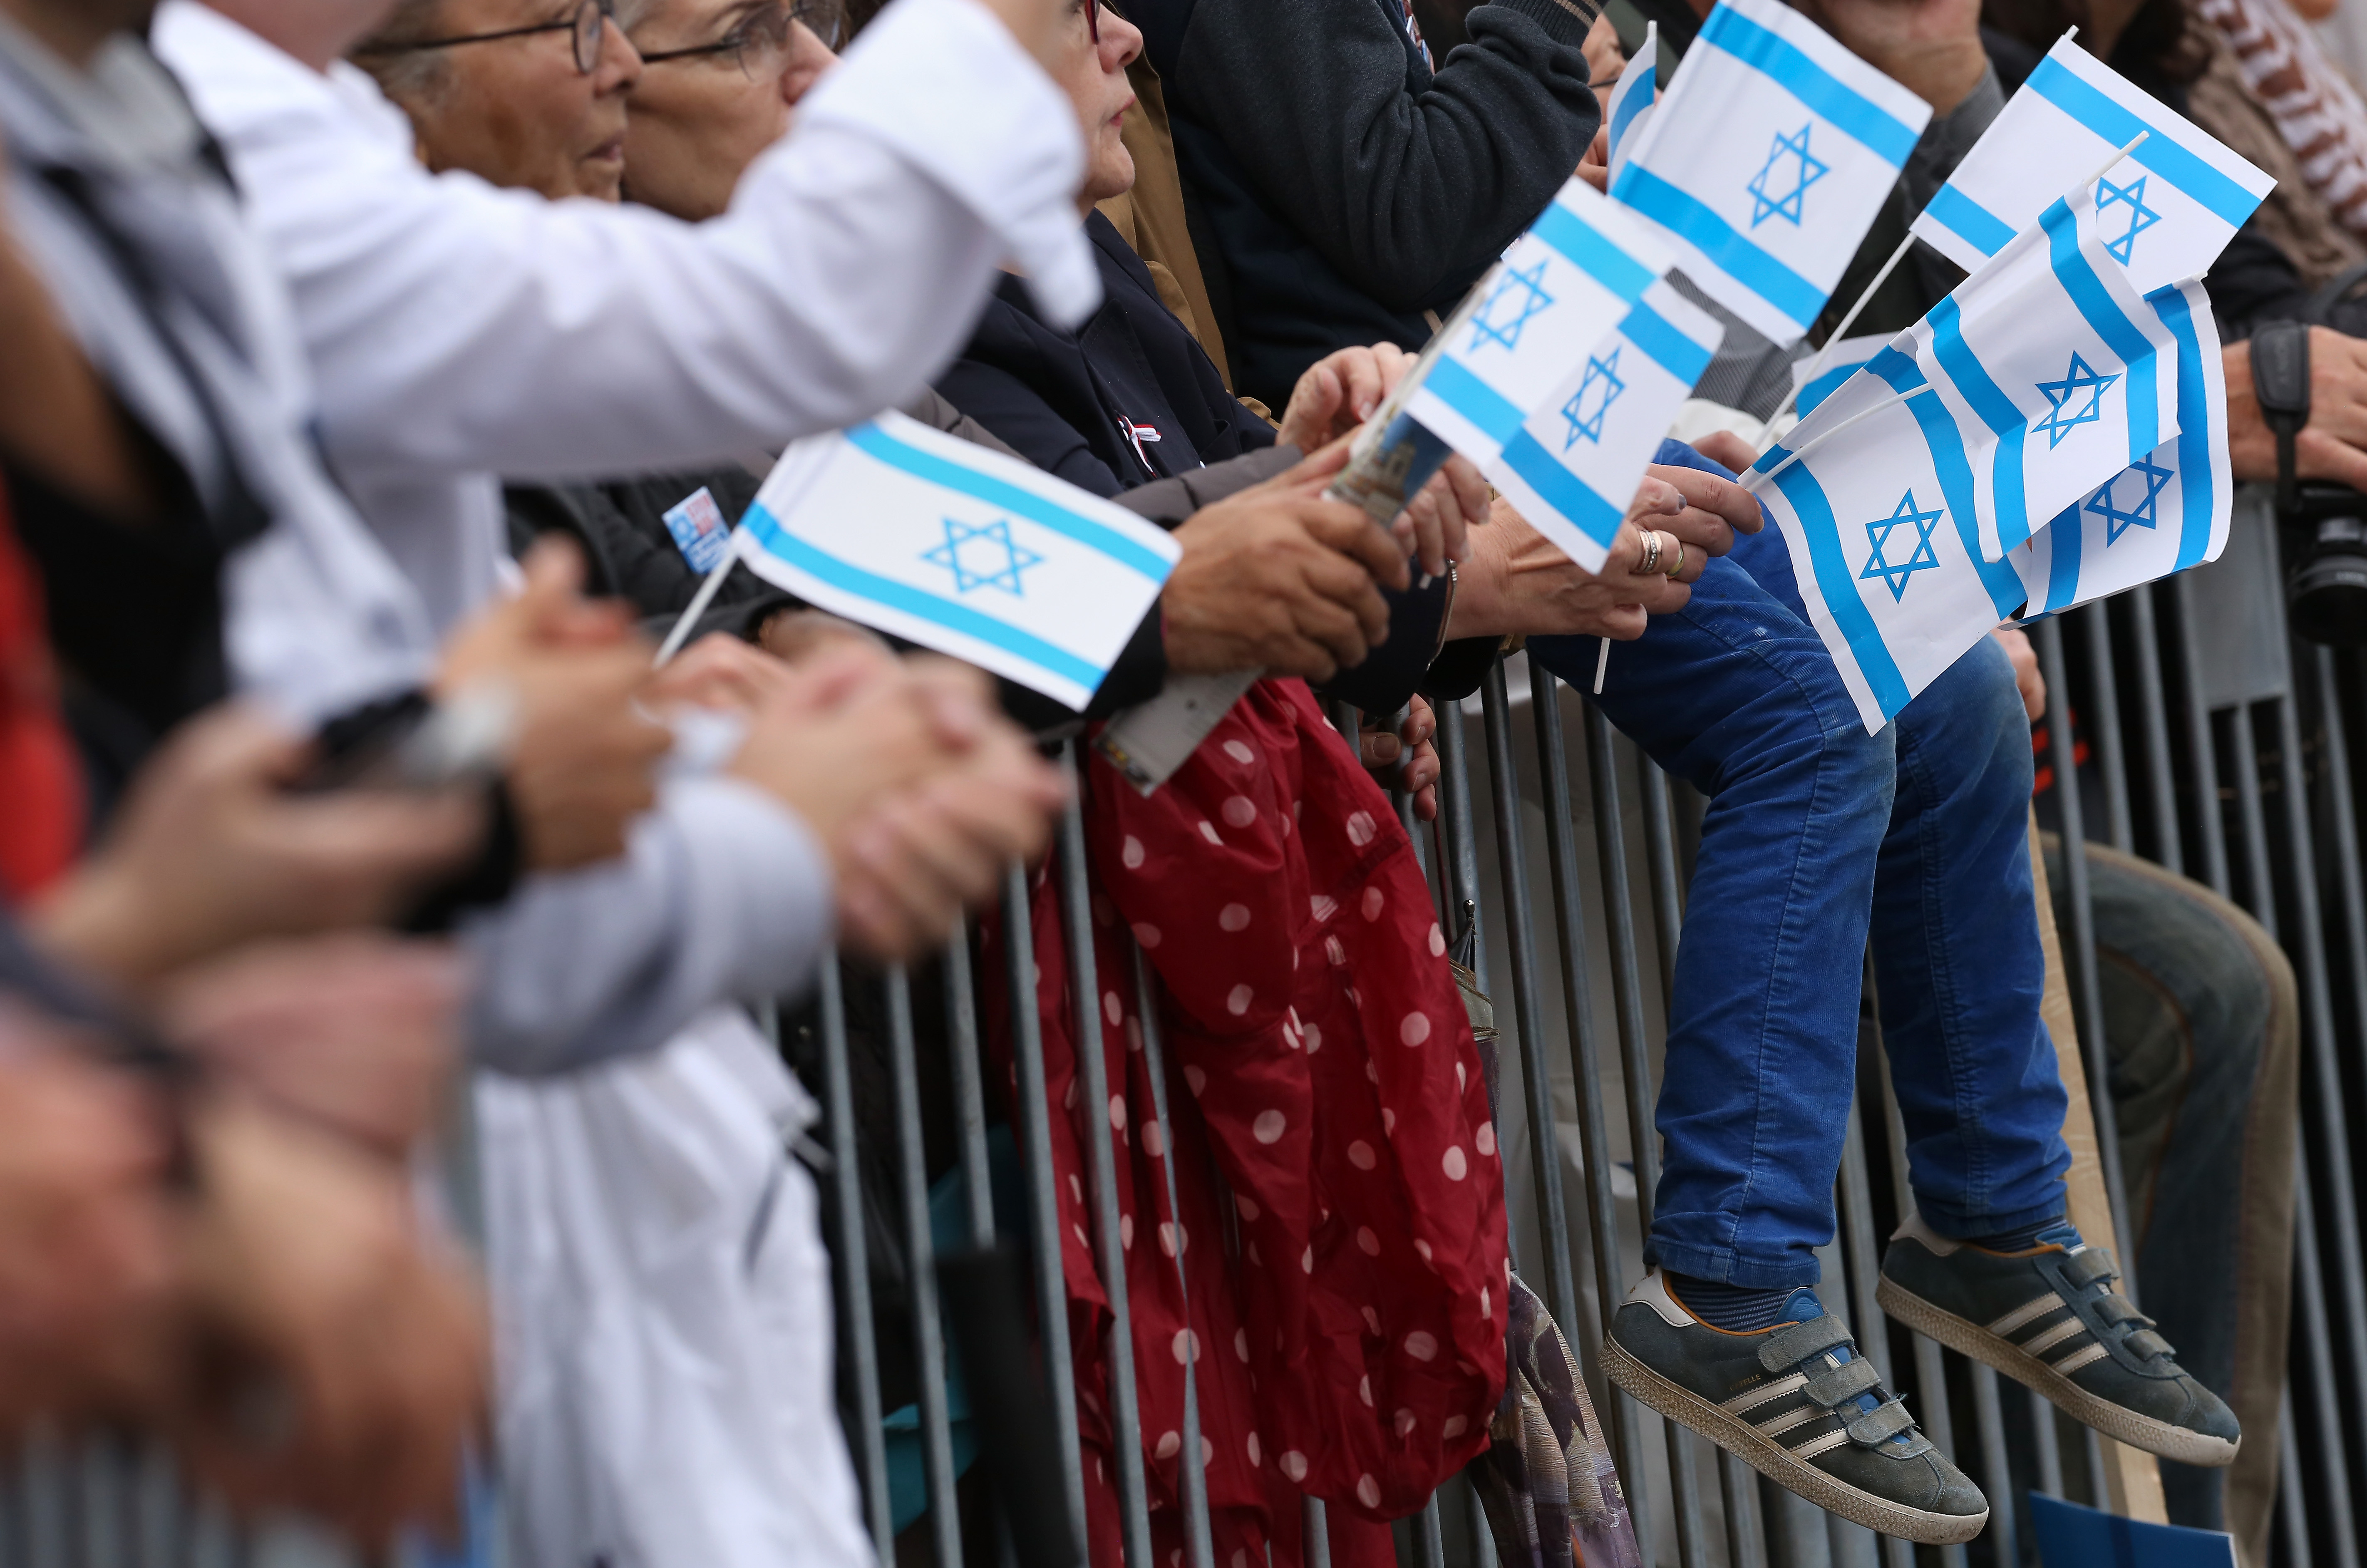 Zentralrat: Wenn Juden auf AfD-„Freundschaft“ angewiesen wären, „würde ich empfehlen Deutschland zu verlassen“